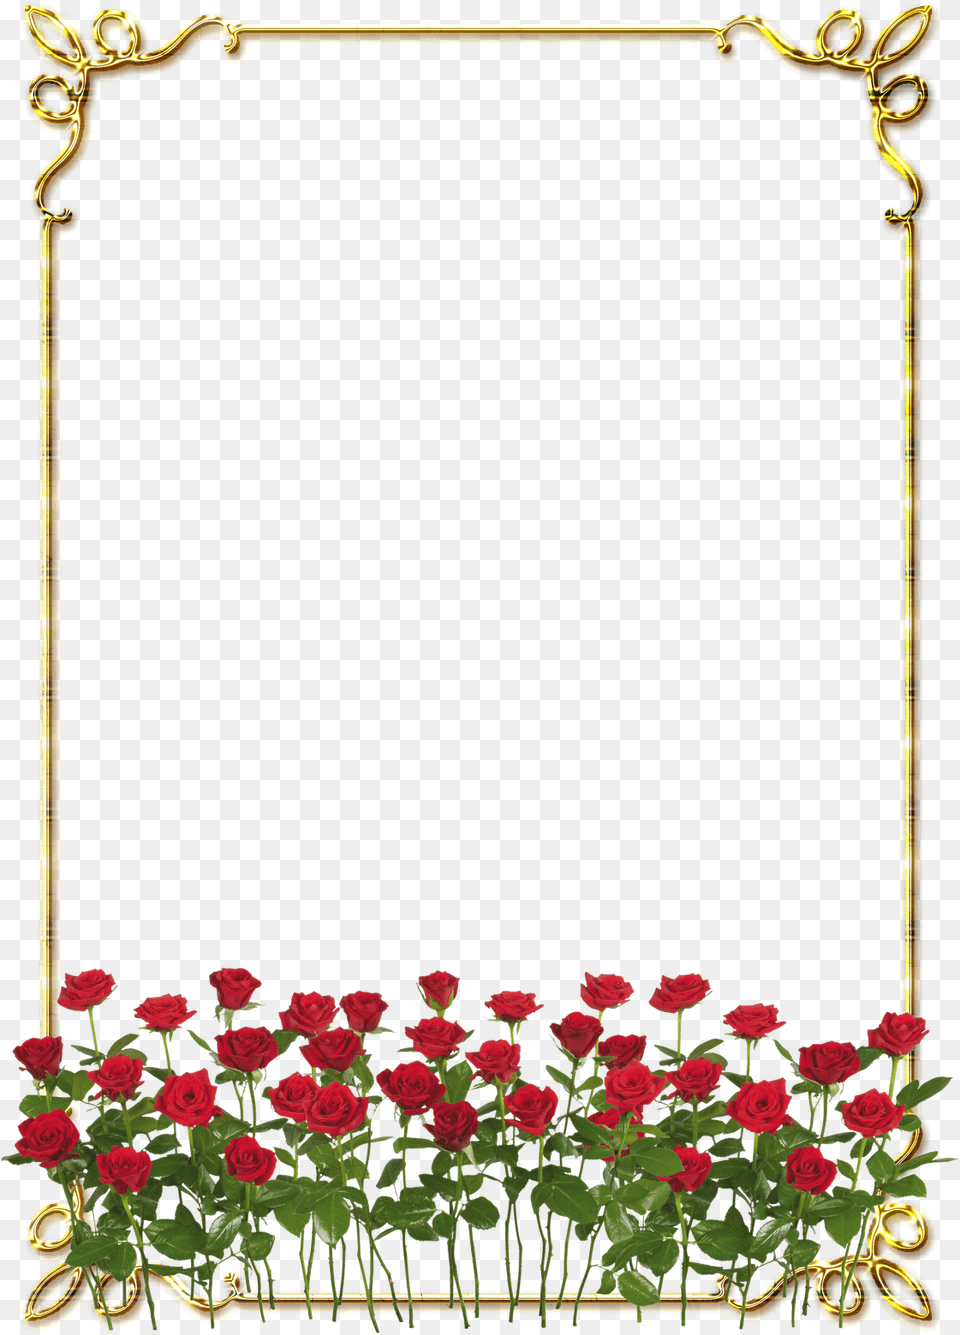 Frames Douradas Com Rosa Vermelhas, Flower, Plant, Rose, Art Png Image